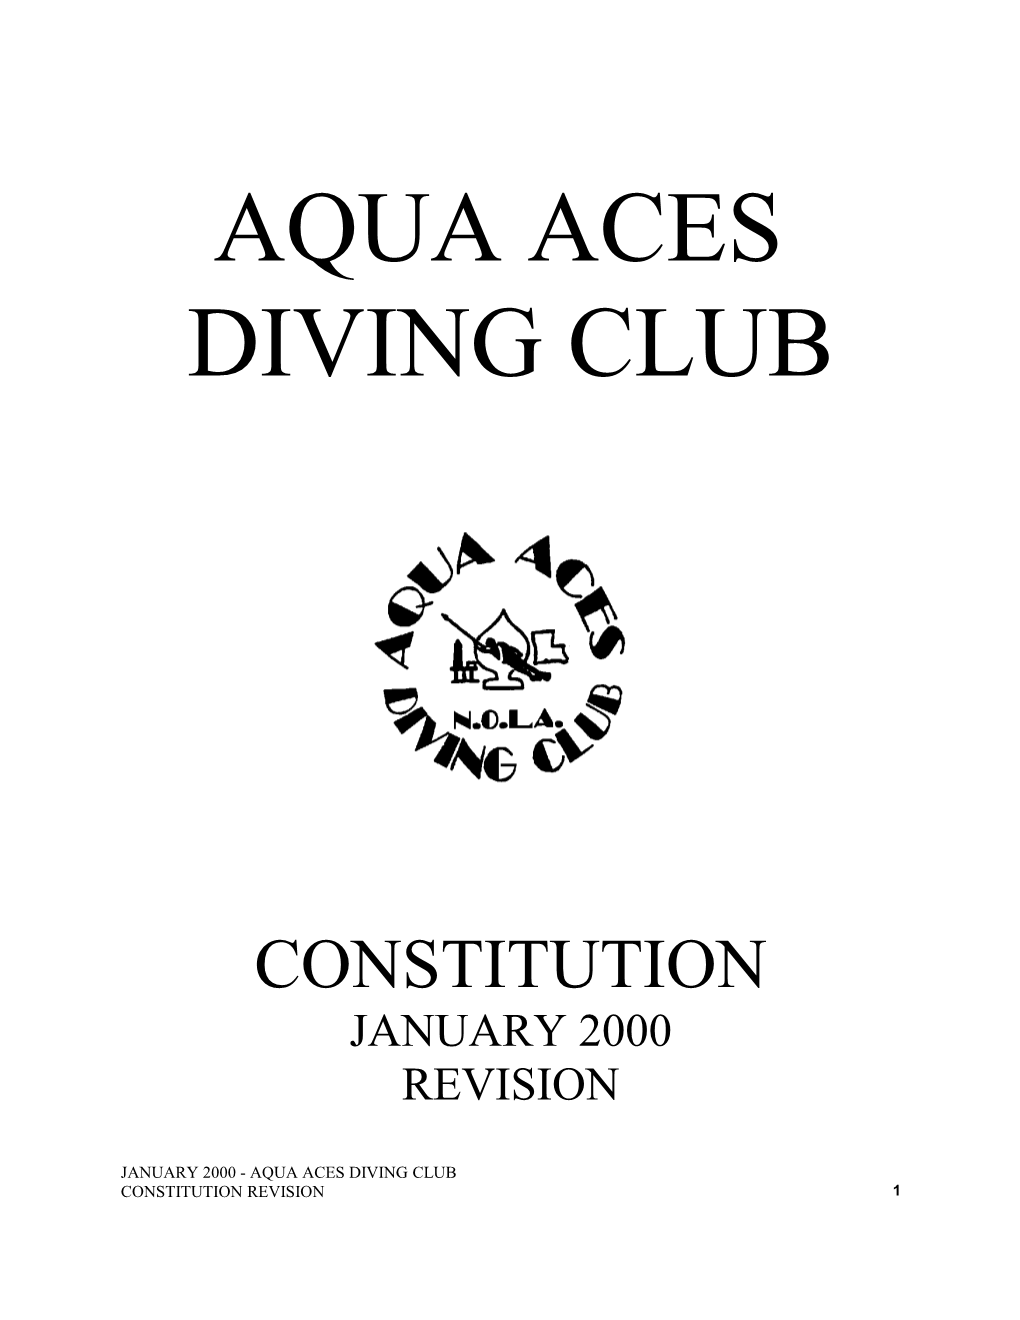 Aqua Aces Diving Club